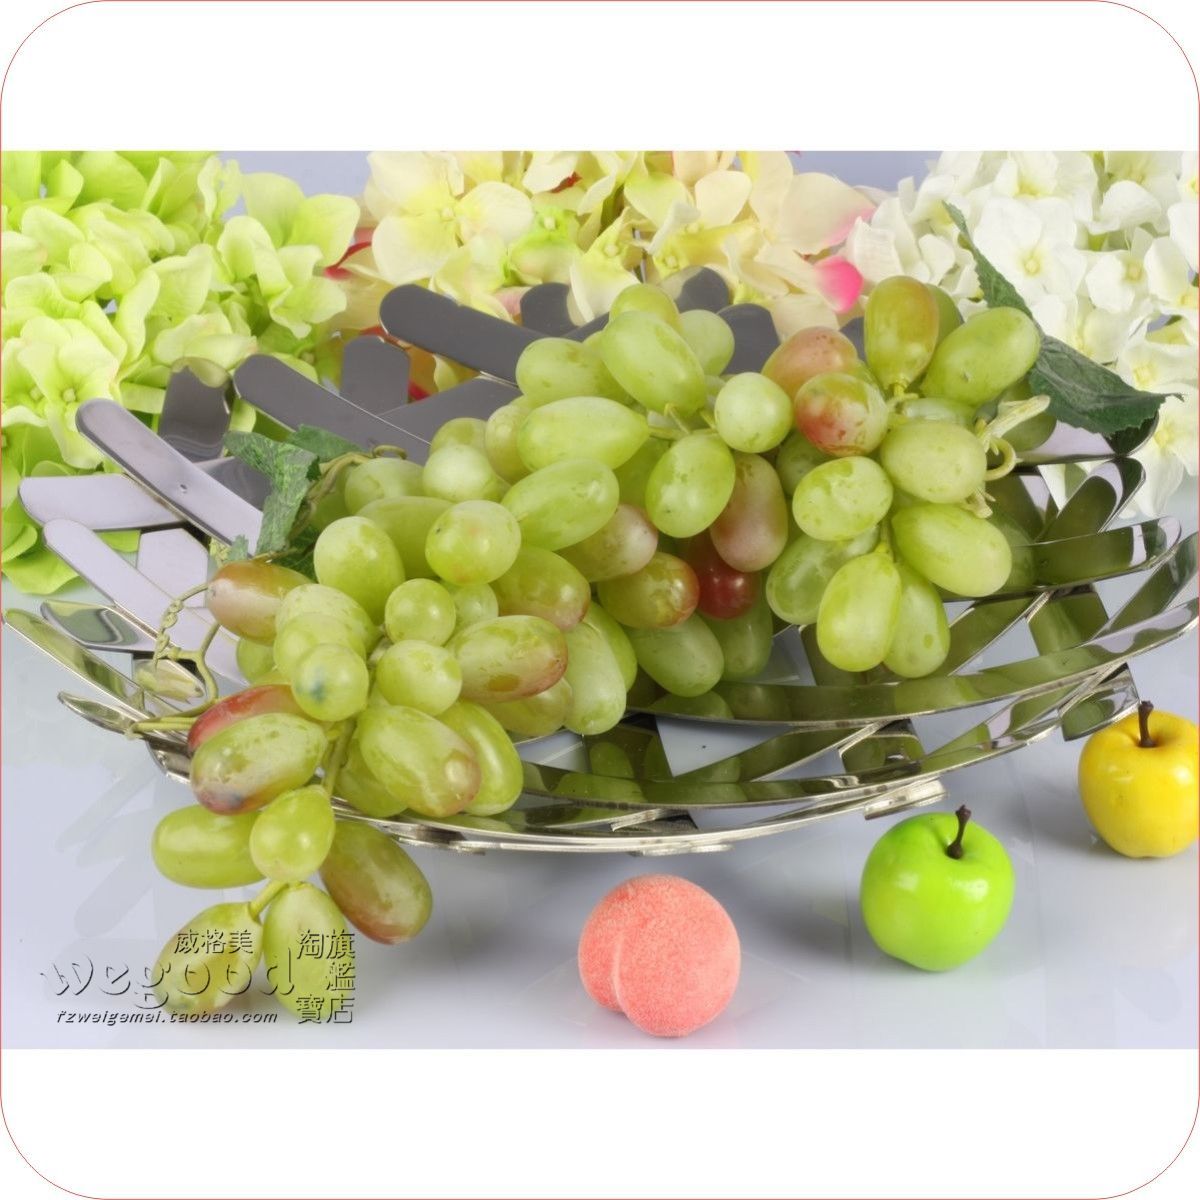 高档塑料水果提子 110头塑料假青提子 仿真水果串工艺品O9385